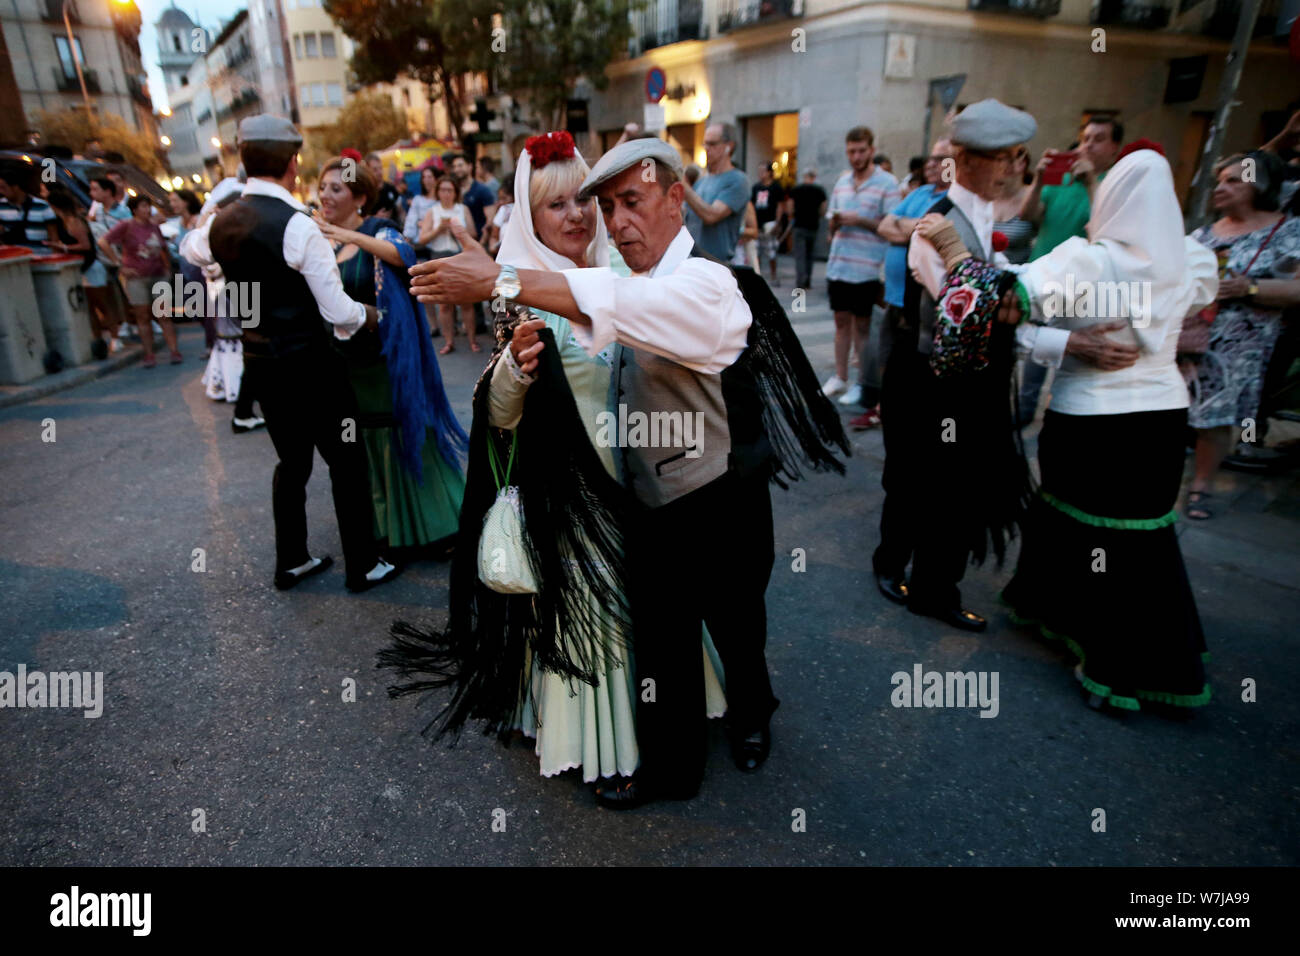 Madrid Espagne ; 08/06/2019.Summer parties Madrid, Espagne commencer avec celle de San Cayetano dans le quartier de Lavapiés, les gens descendent dans les rues, boire, danser et se rafraîchir la nuit de 30 degrés Celsius et essayer de maintenir leur idiosyncrasie, et leur identité à l'encontre de l'embourgeoisement, expulsions et crises économiques qui sont accentuées dans ces espaces. Et Chulapas Chulapos (c'est ainsi que les habitants des quartiers de Madrid sont nommés) chotis danse Danse (autochtone) dans les rues avec leurs vestes à carreaux avec un œillet à la boutonnière et le chapeau (ils) et de leurs robes avec leurs sha Banque D'Images